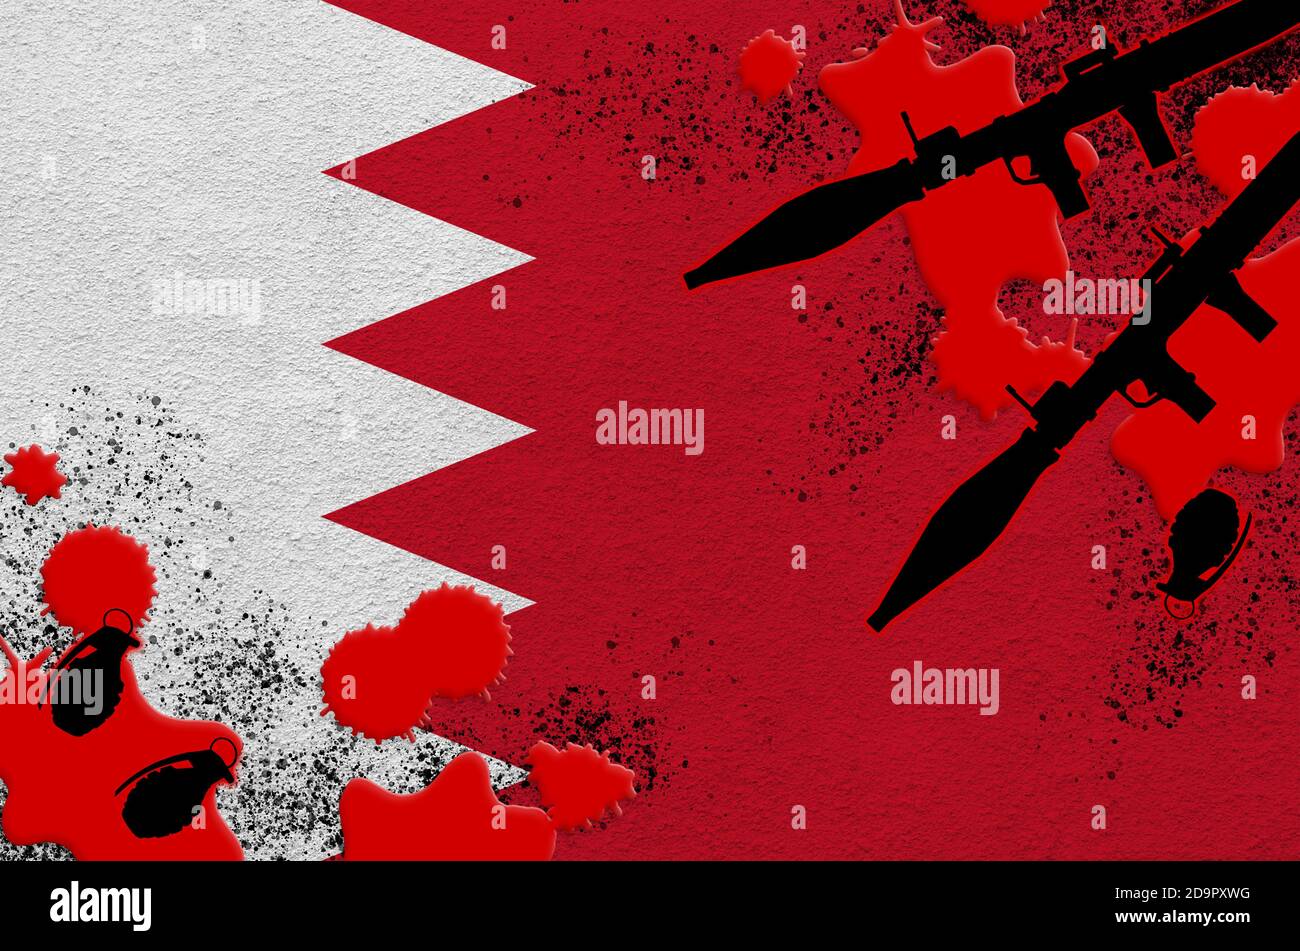 Drapeau de Bahreïn et lance-roquettes avec grenades dans le sang. Concept d'attaque terroriste et d'opérations militaires. Trafic d'armes Banque D'Images